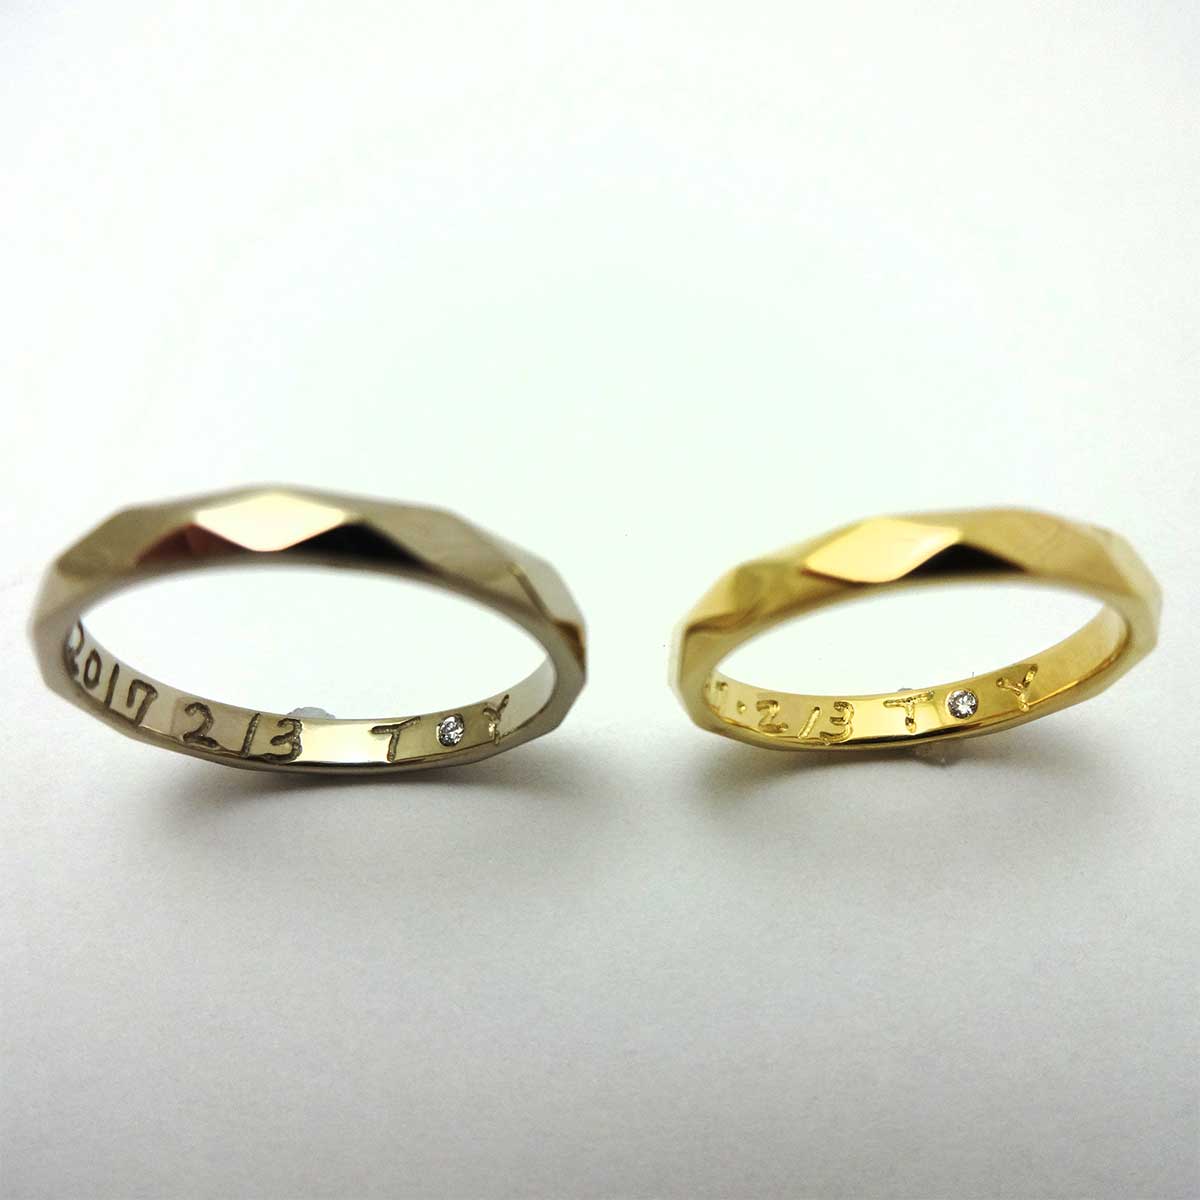 ダイヤモンドカットを施した手作りの結婚指輪 – 手作り指輪のアトリエ100&1